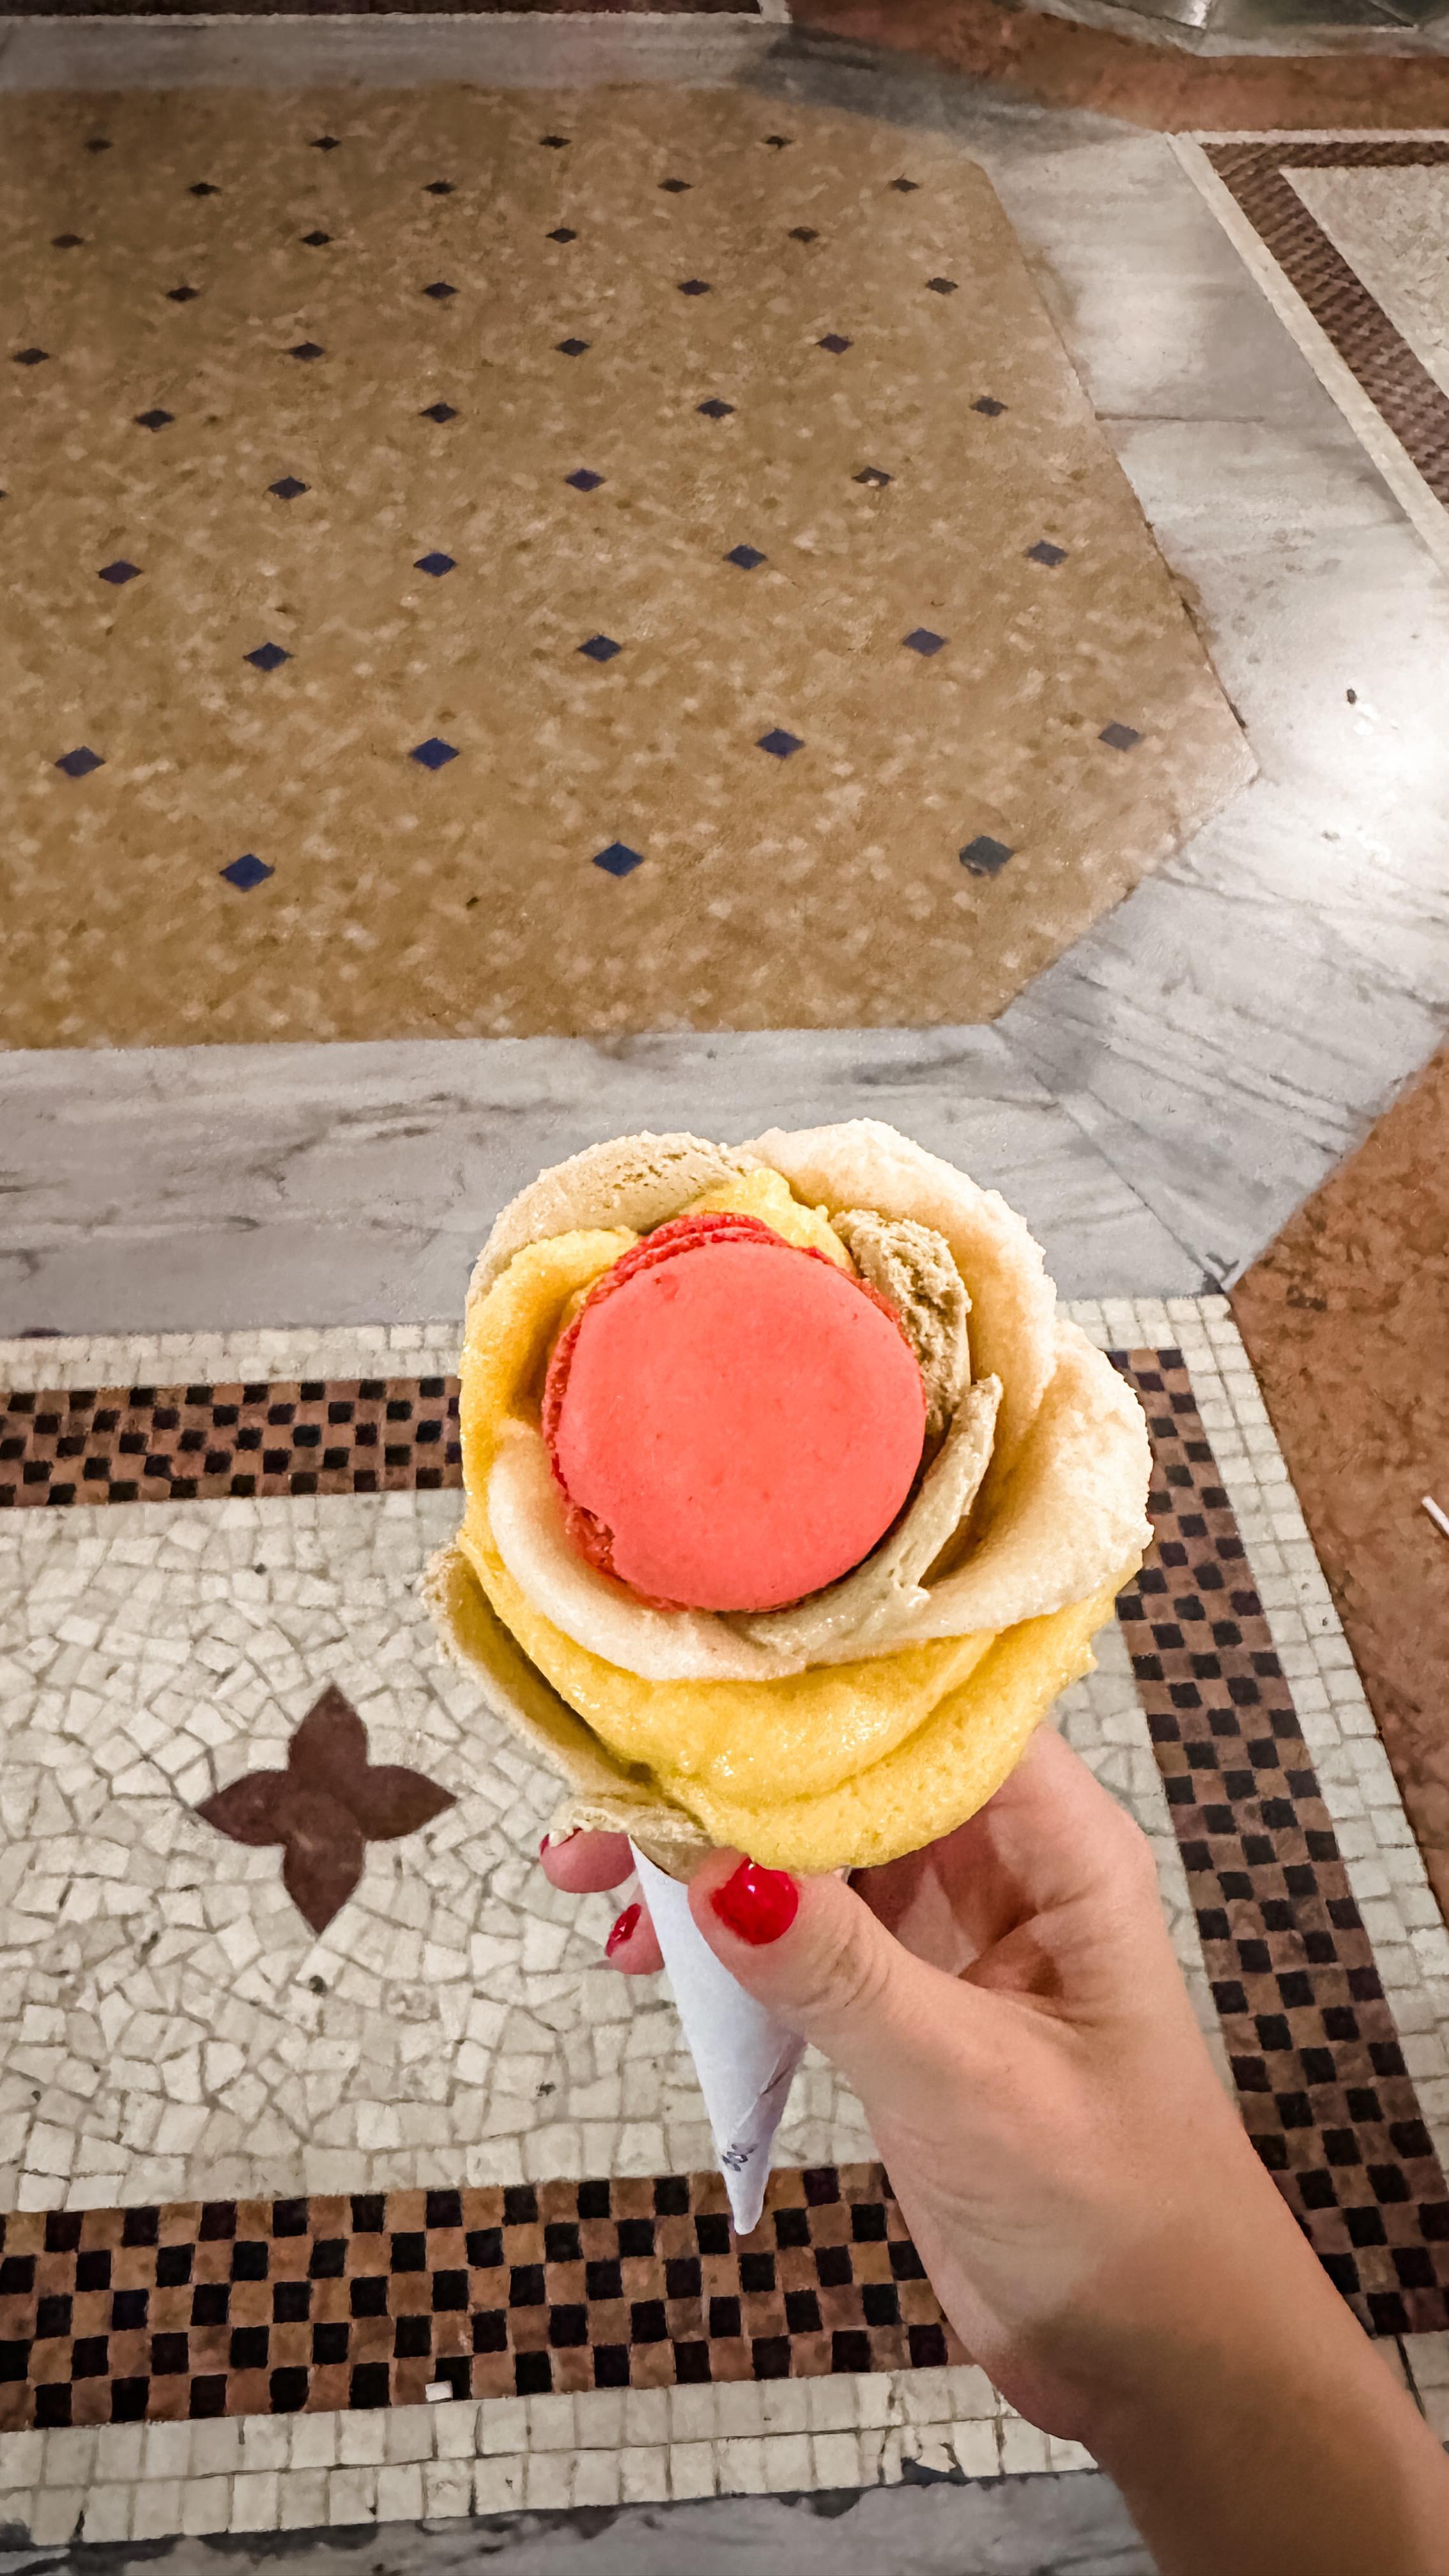 Înghețată sub formă de trandafir de la Amorino: fără arome artificiale, conservanți și coloranți. Și este delicioasă, nu doar spectaculoasă. Echipa de acolo ar merita un premiu pentru migala cu care asamblează aceste flori, având mereu o coadă imensă în față. Ah, si inclusiv macaronul are inghetata inauntru, este macaron gelato.
#gelato #gelatoitaliano #amorino #amorinogelato #amorinogelateria